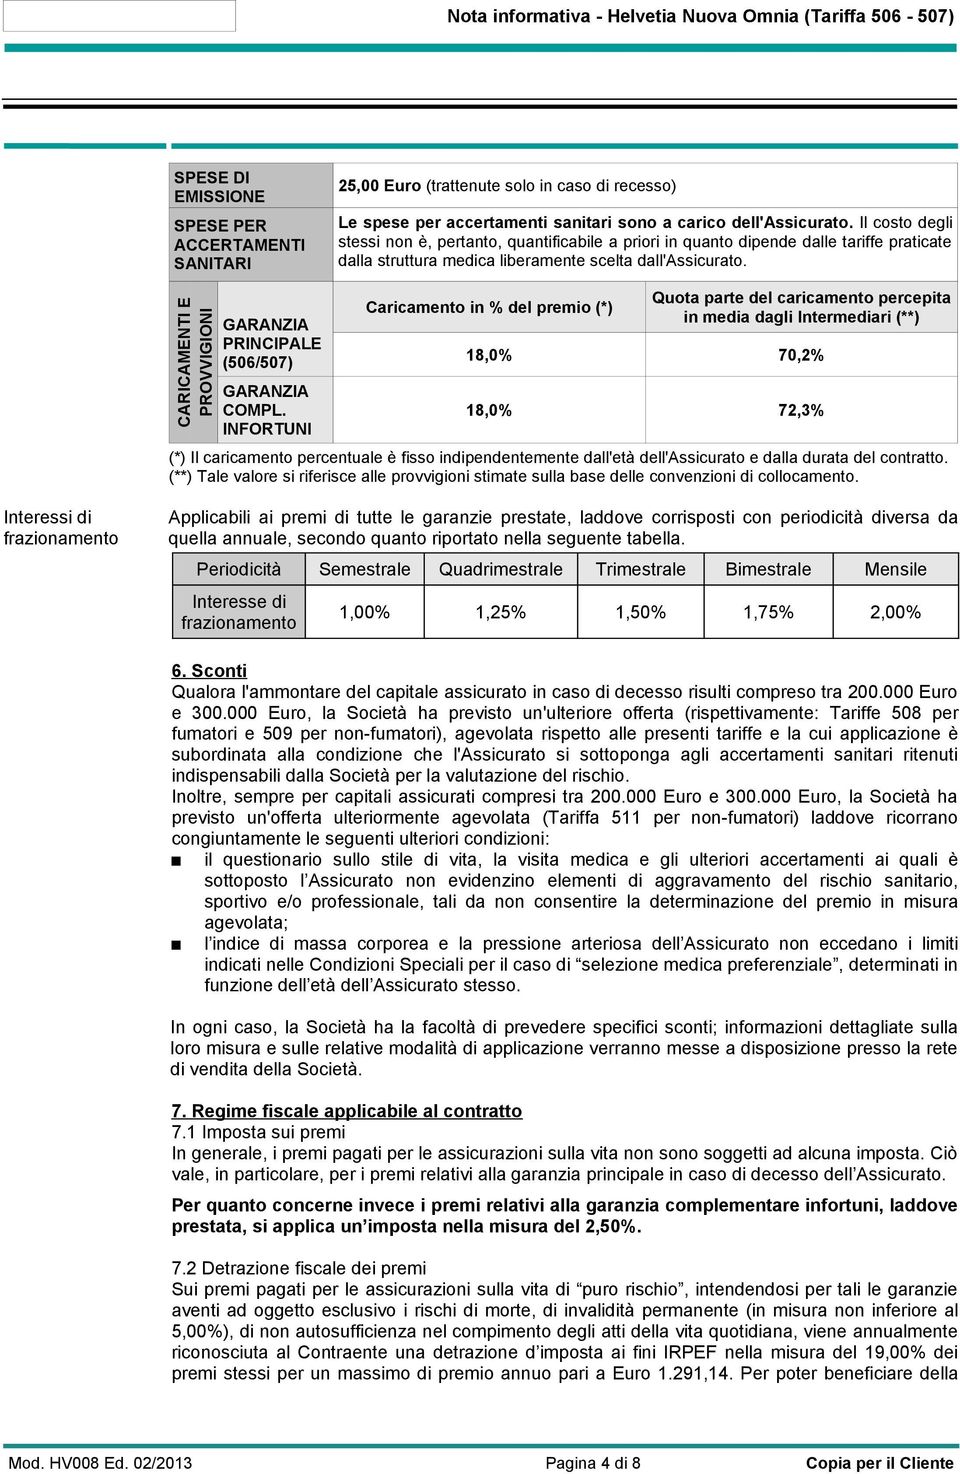 CARICAMENTI E PROVVIGIONI GARANZIA PRINCIPALE (506/507) GARANZIA COMPL.